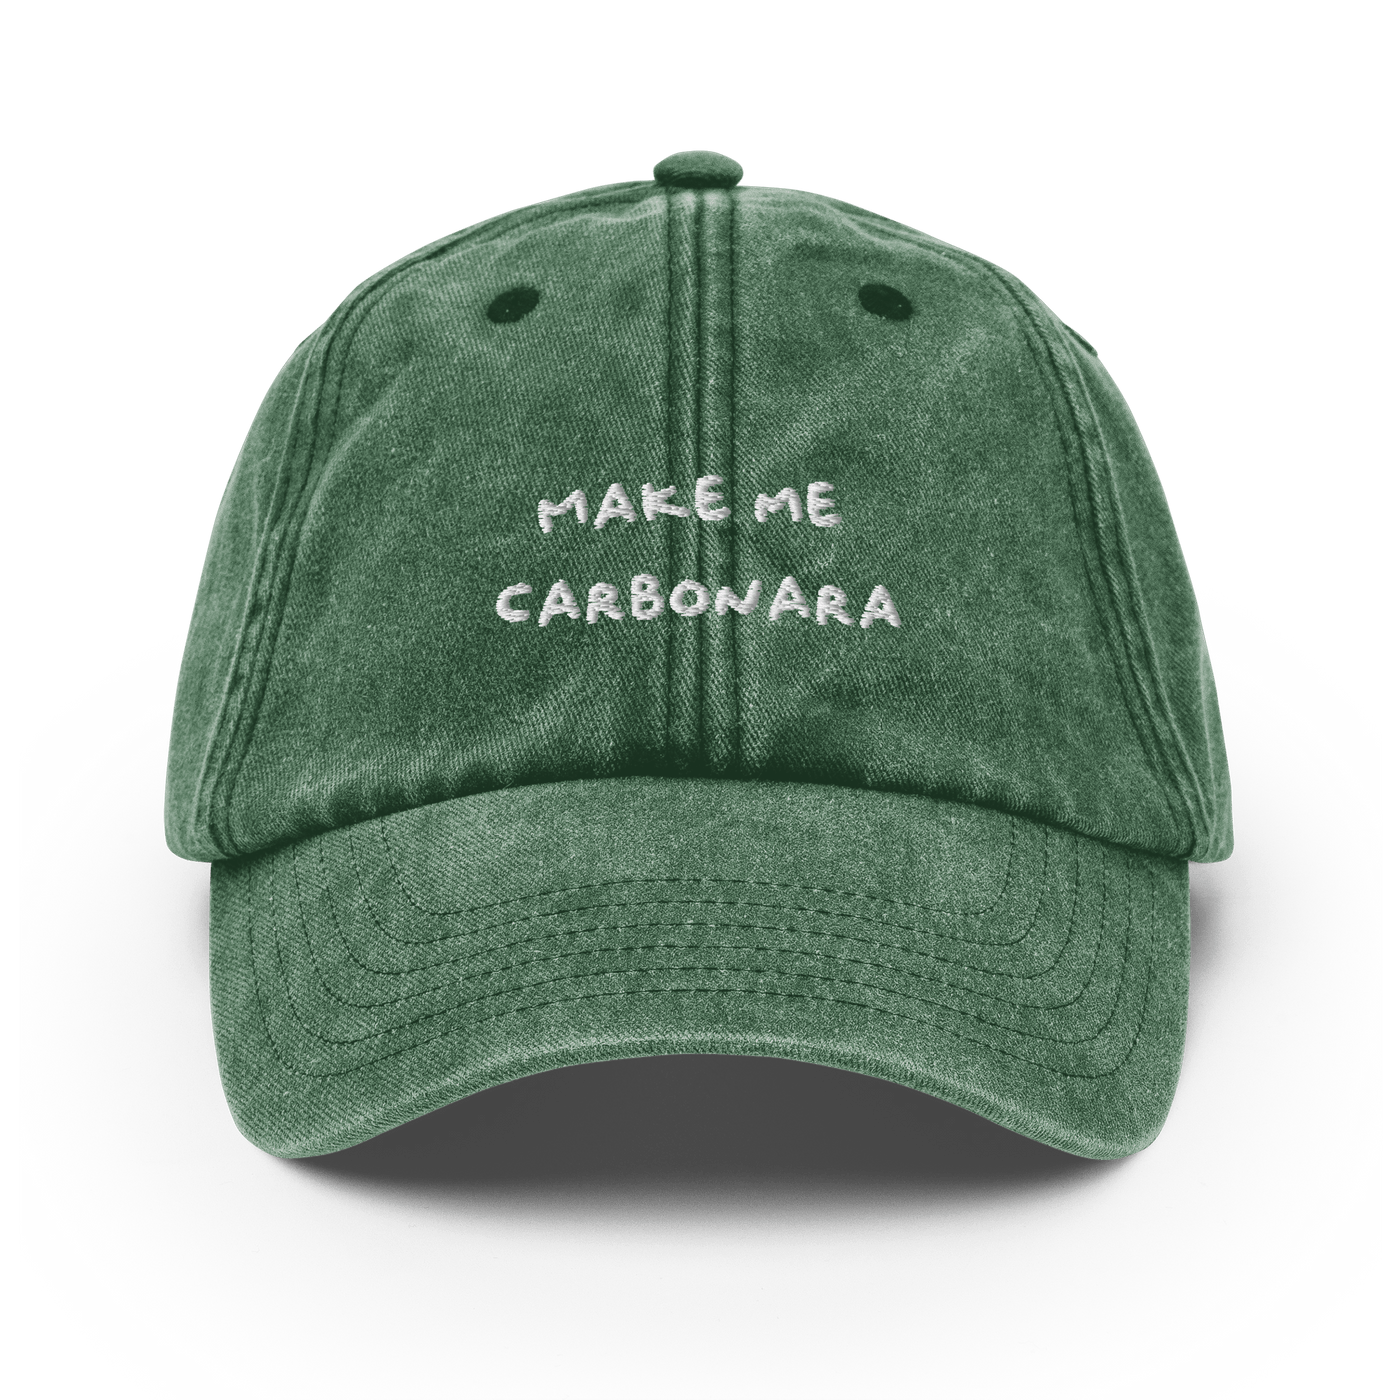 Make me Carbonara Vintage Hat - Vintage Bottle Green - - Just Another Cap Store